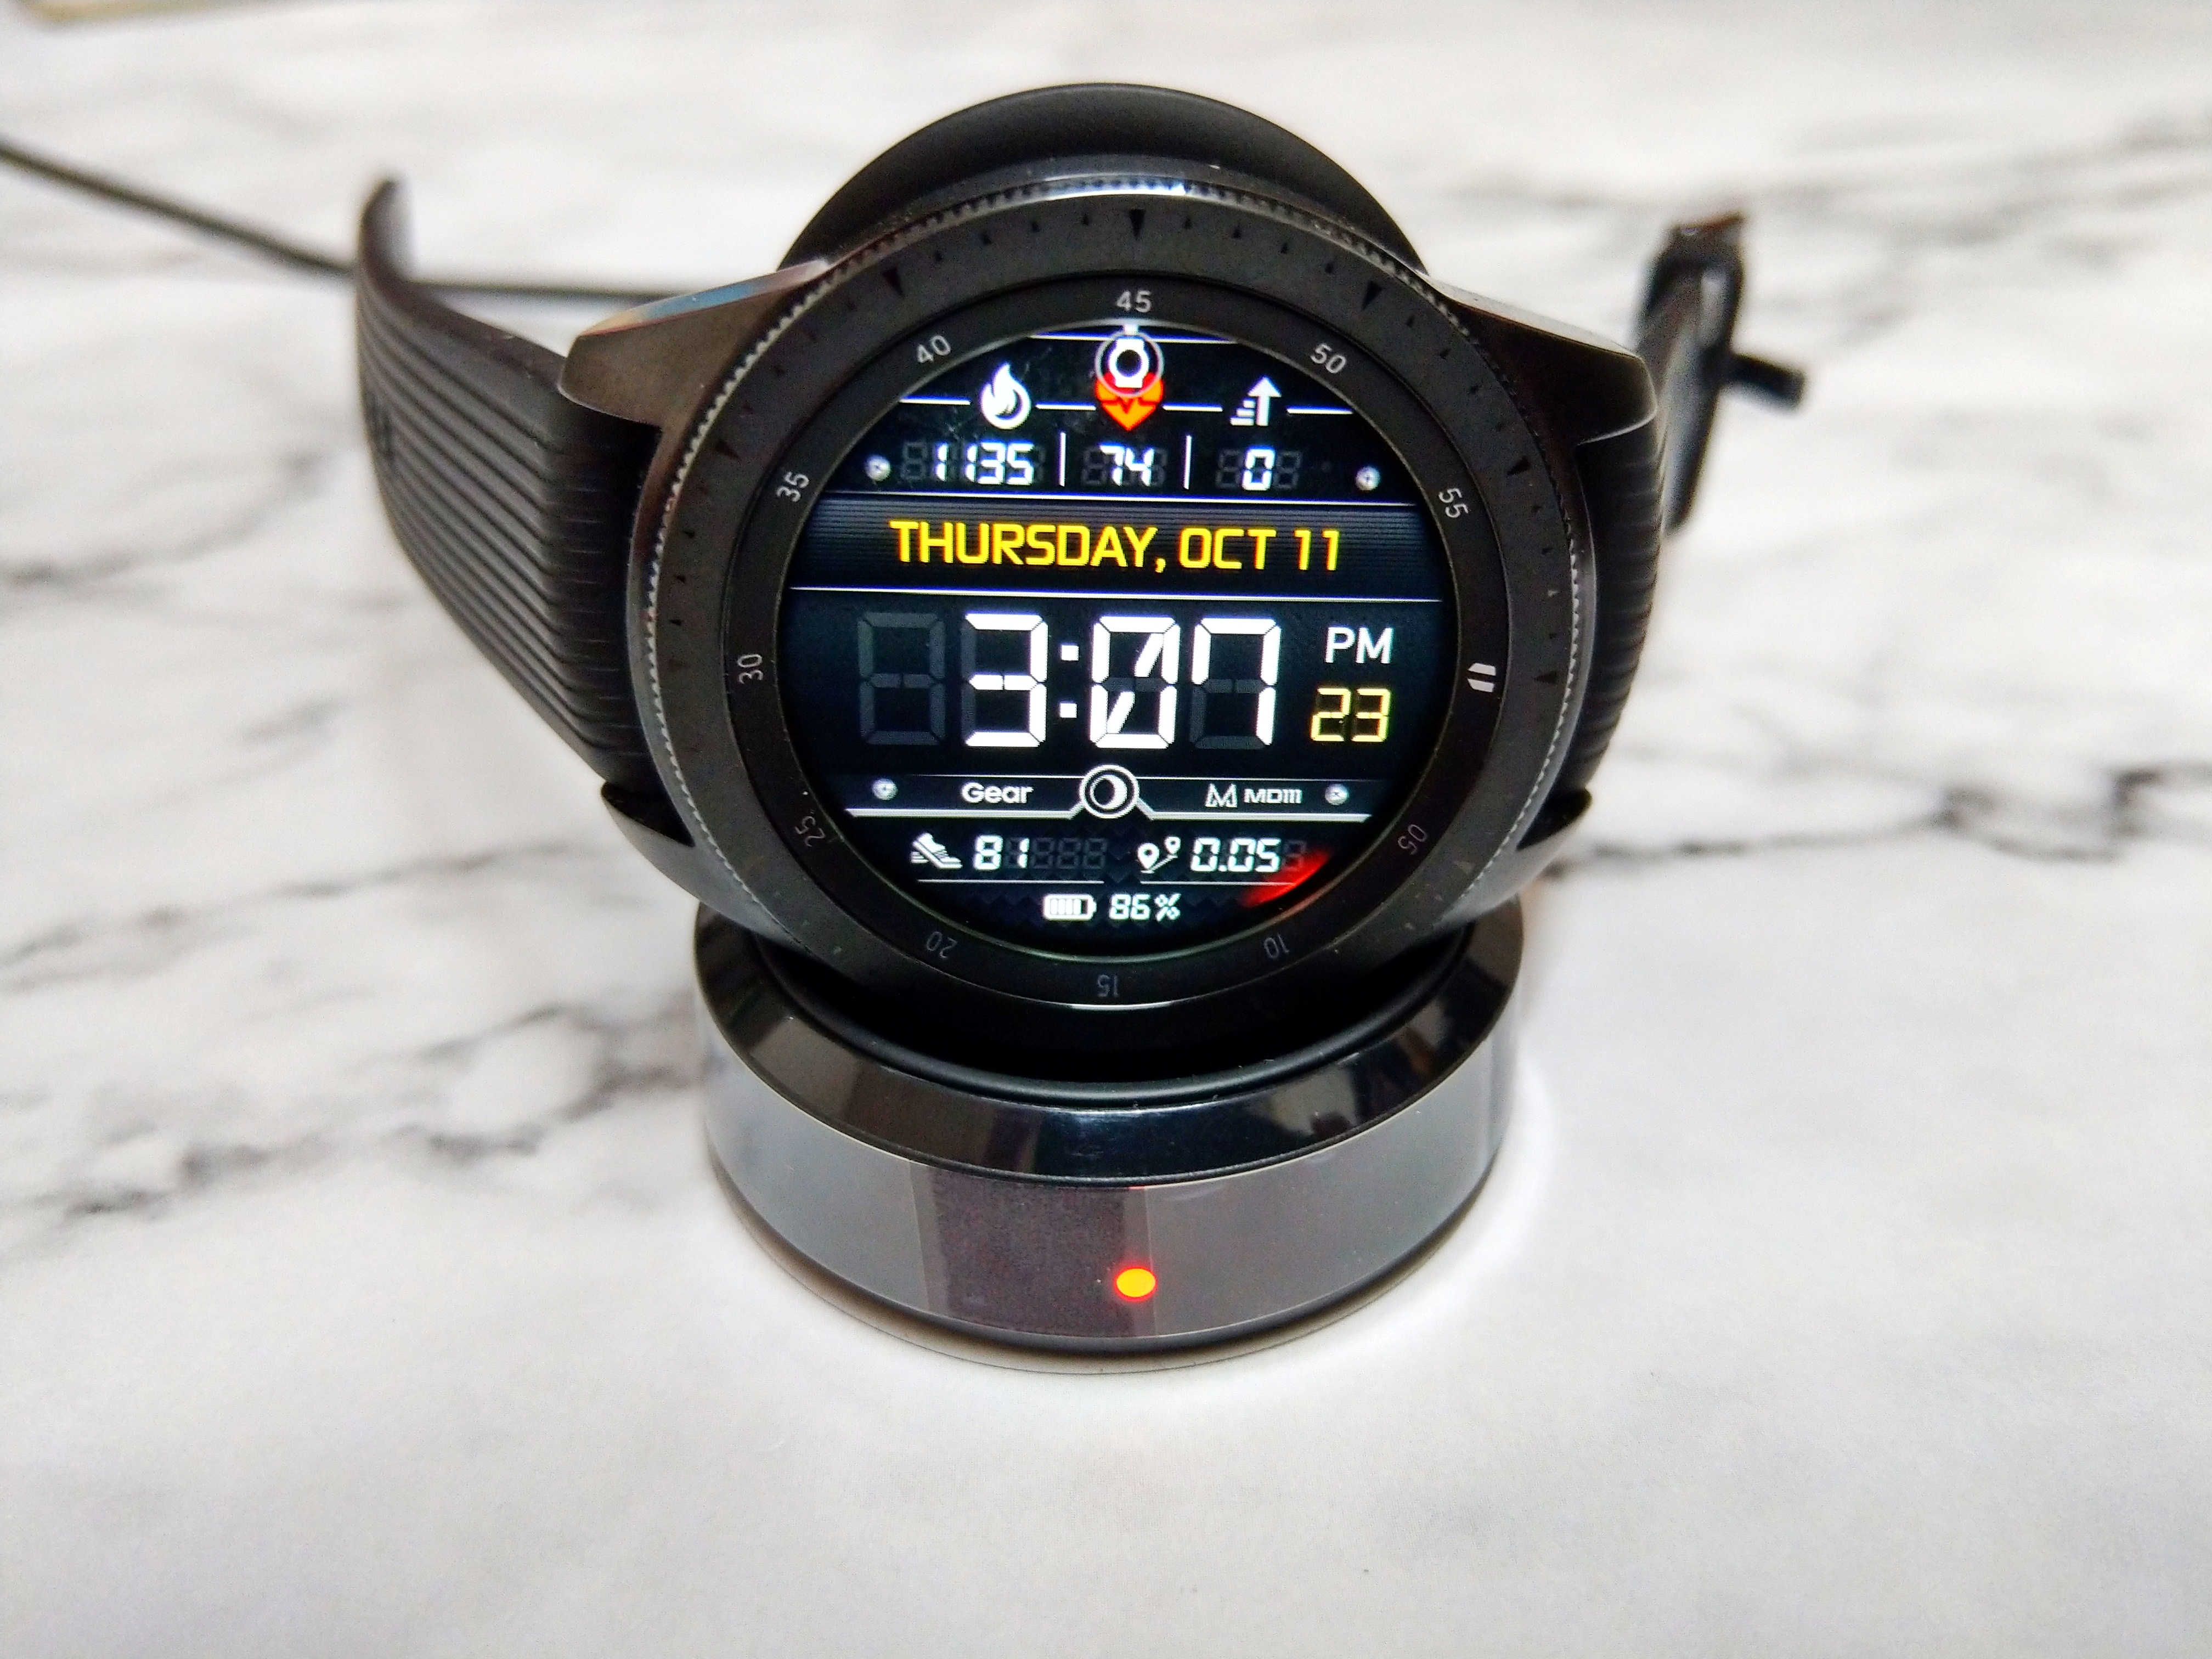 Samsung Galaxy Watch開箱試用 - 完美錶現生活全控 - 智慧手錶 - 科技生活 - teXch